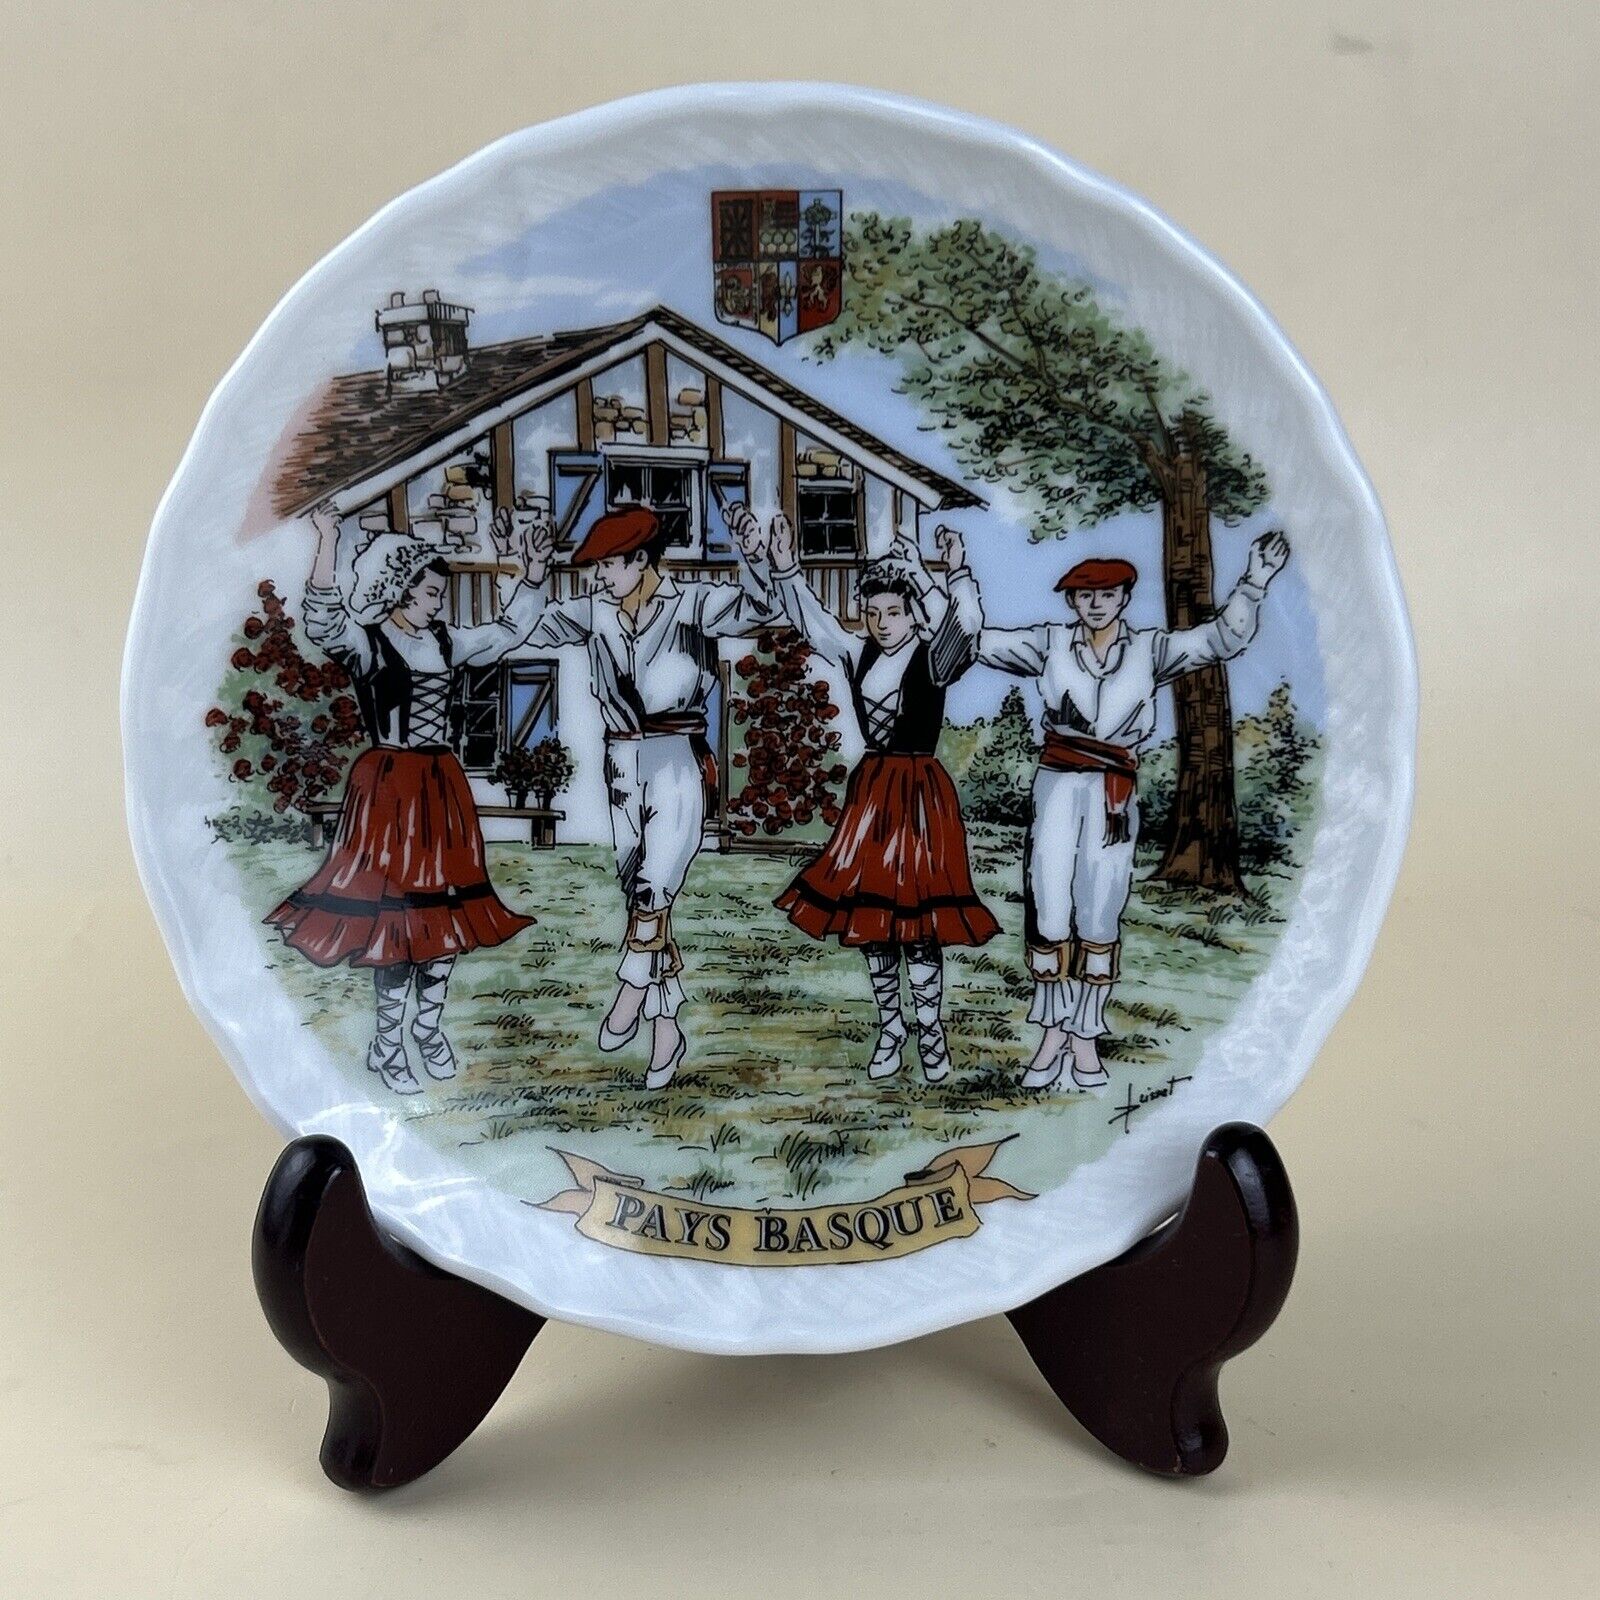 1999 Pays Basque A. Lhonneur Porcelain Plate 5.75'' Basque Country Dancing Scene